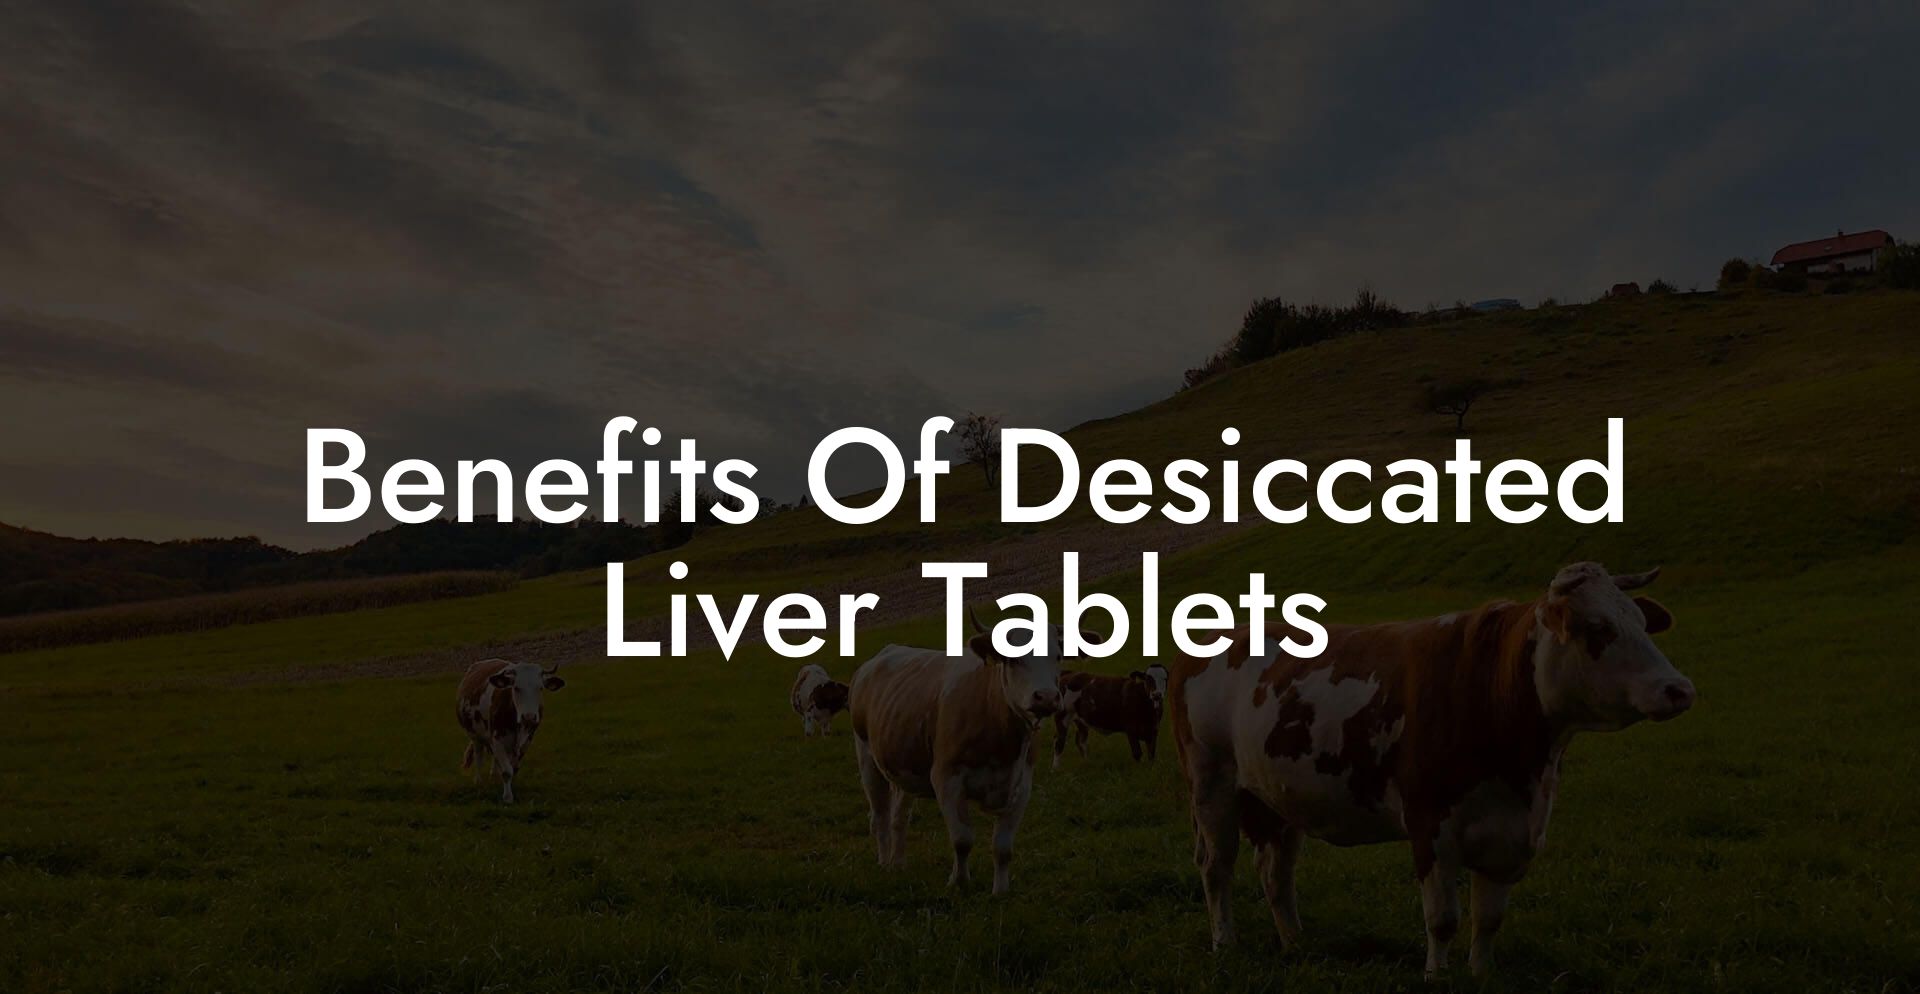 Benefits Of Desiccated Liver Tablets